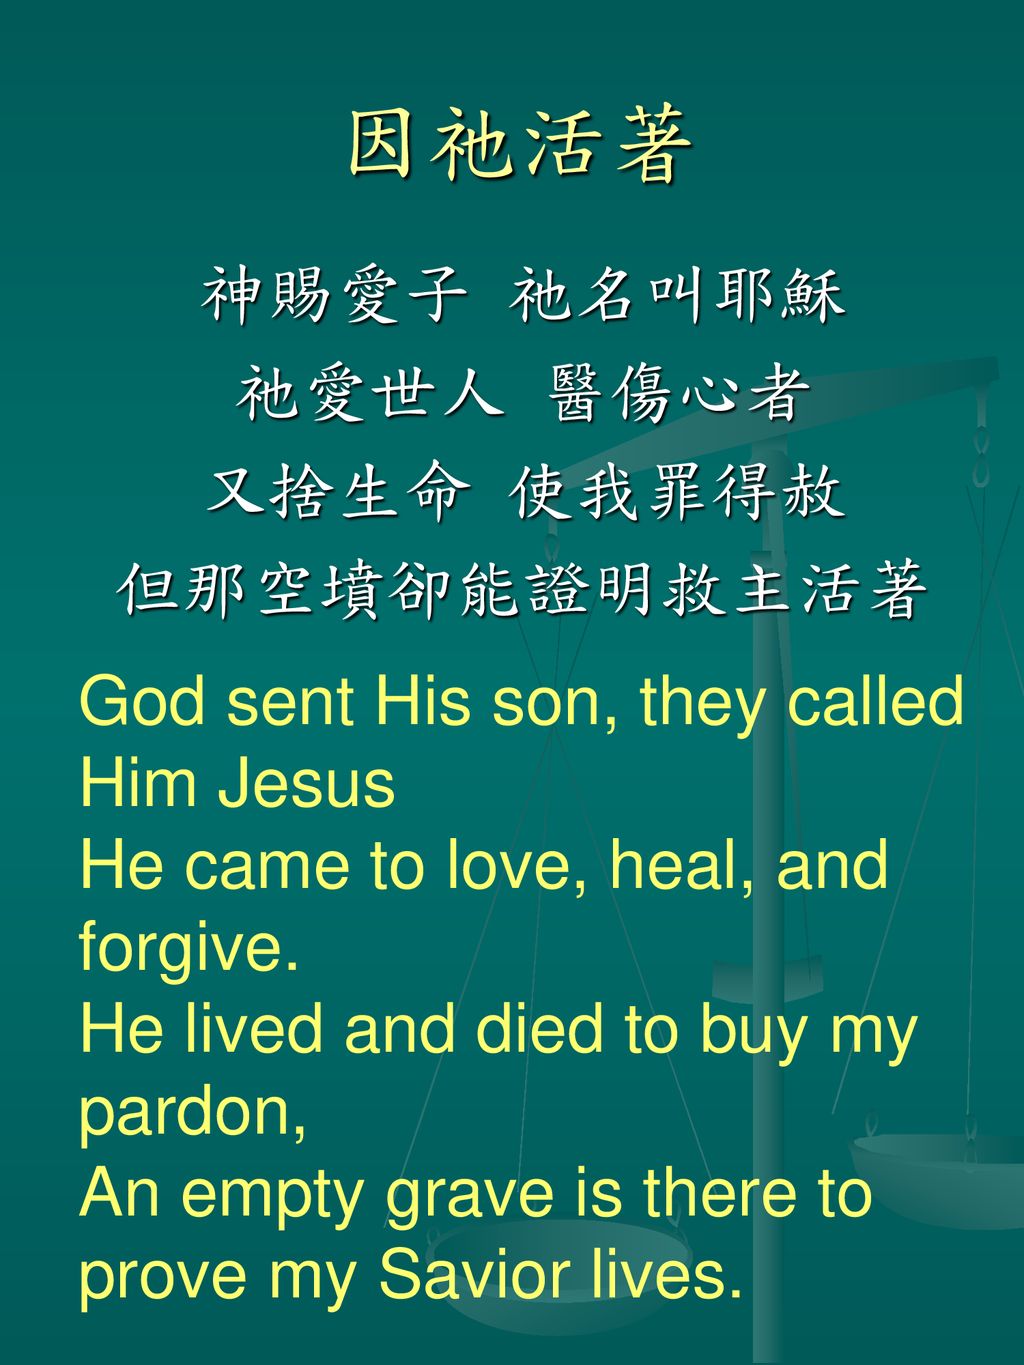 神賜愛子 祂名叫耶穌 祂愛世人 醫傷心者 又捨生命 使我罪得赦 但那空墳卻能證明救主活著